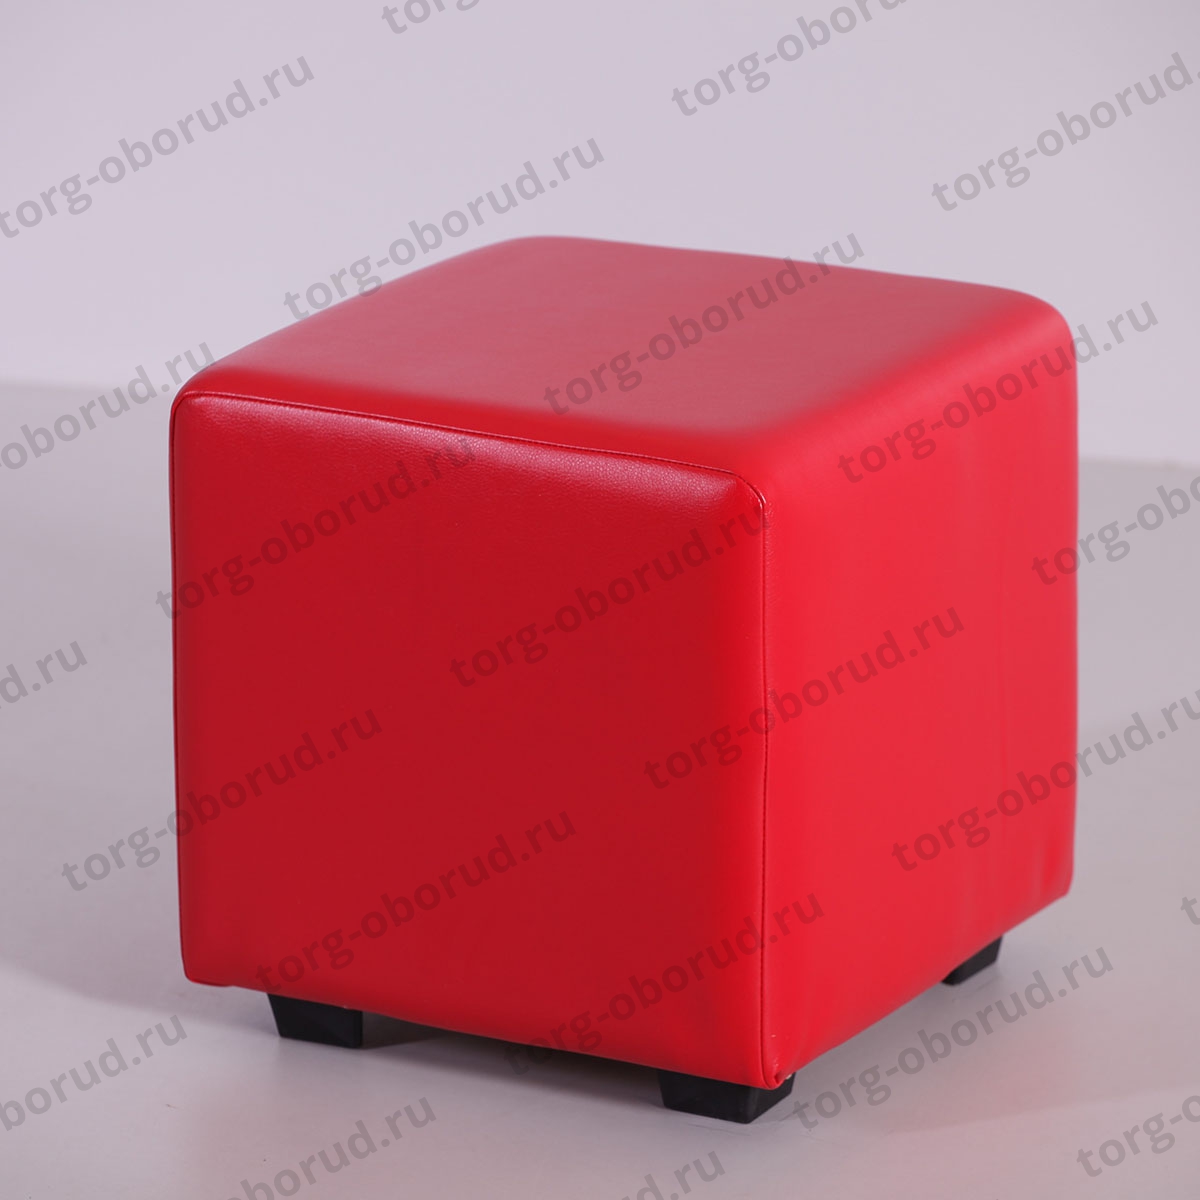 Красный 1 куб. Банкетка куб BN-007. Пуфик красный куб пуф1. Банкетка/сектор ПФ-4(красн). Пуфик "ПФ-1" красный.